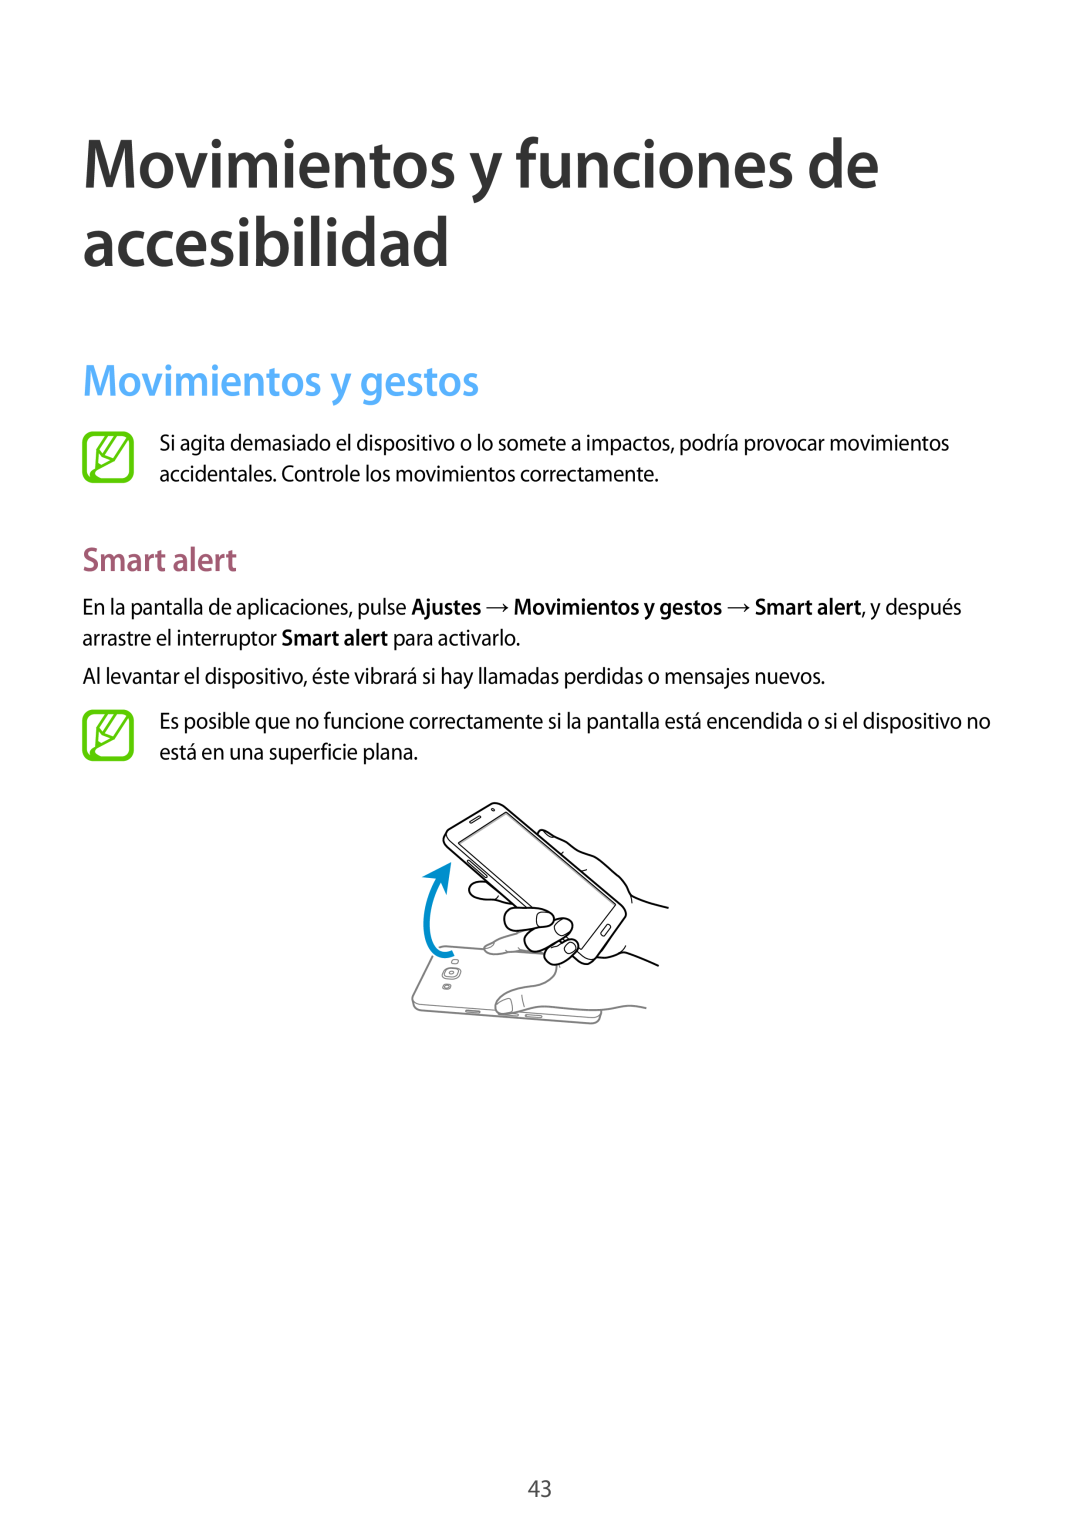 Samsung SM-A500FZSUPHE, SM-A500FZDUPHE manual Movimientos y funciones de accesibilidad, Movimientos y gestos, Smart alert 